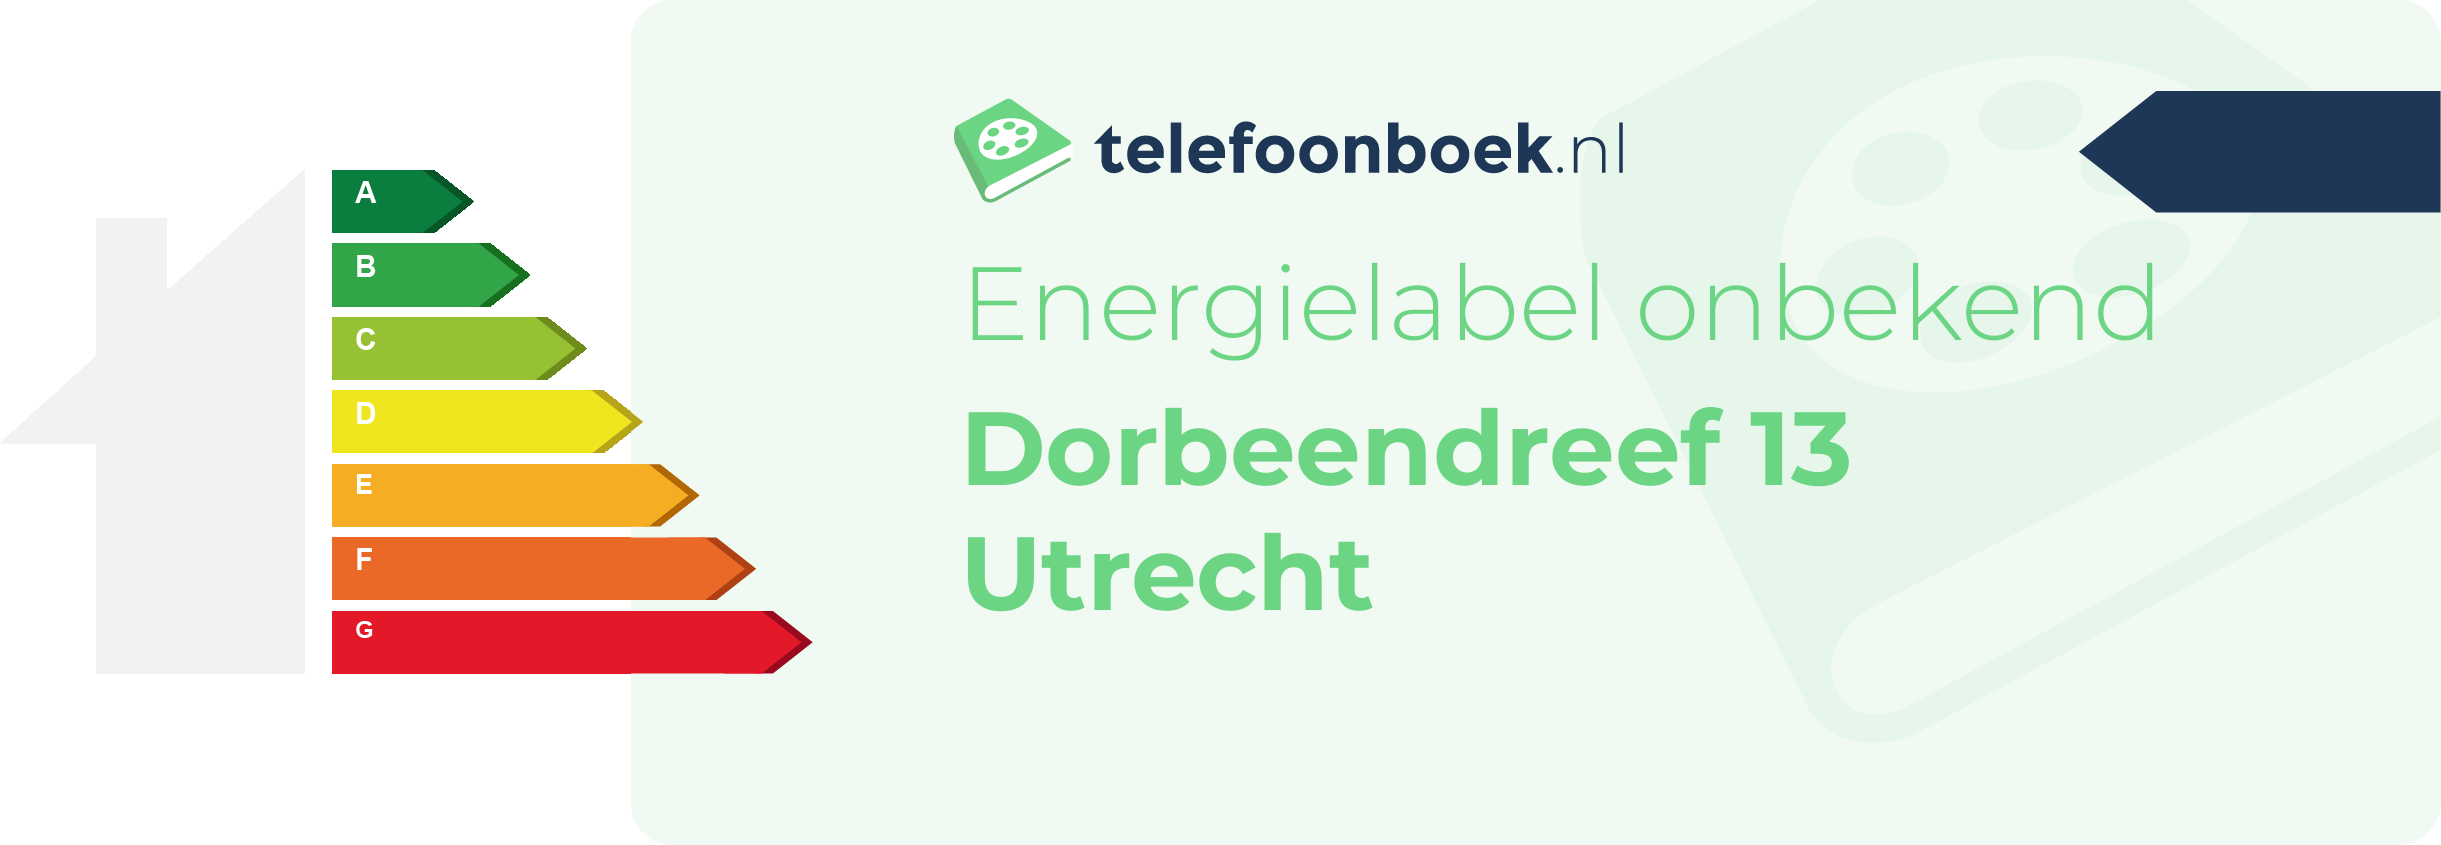 Energielabel Dorbeendreef 13 Utrecht